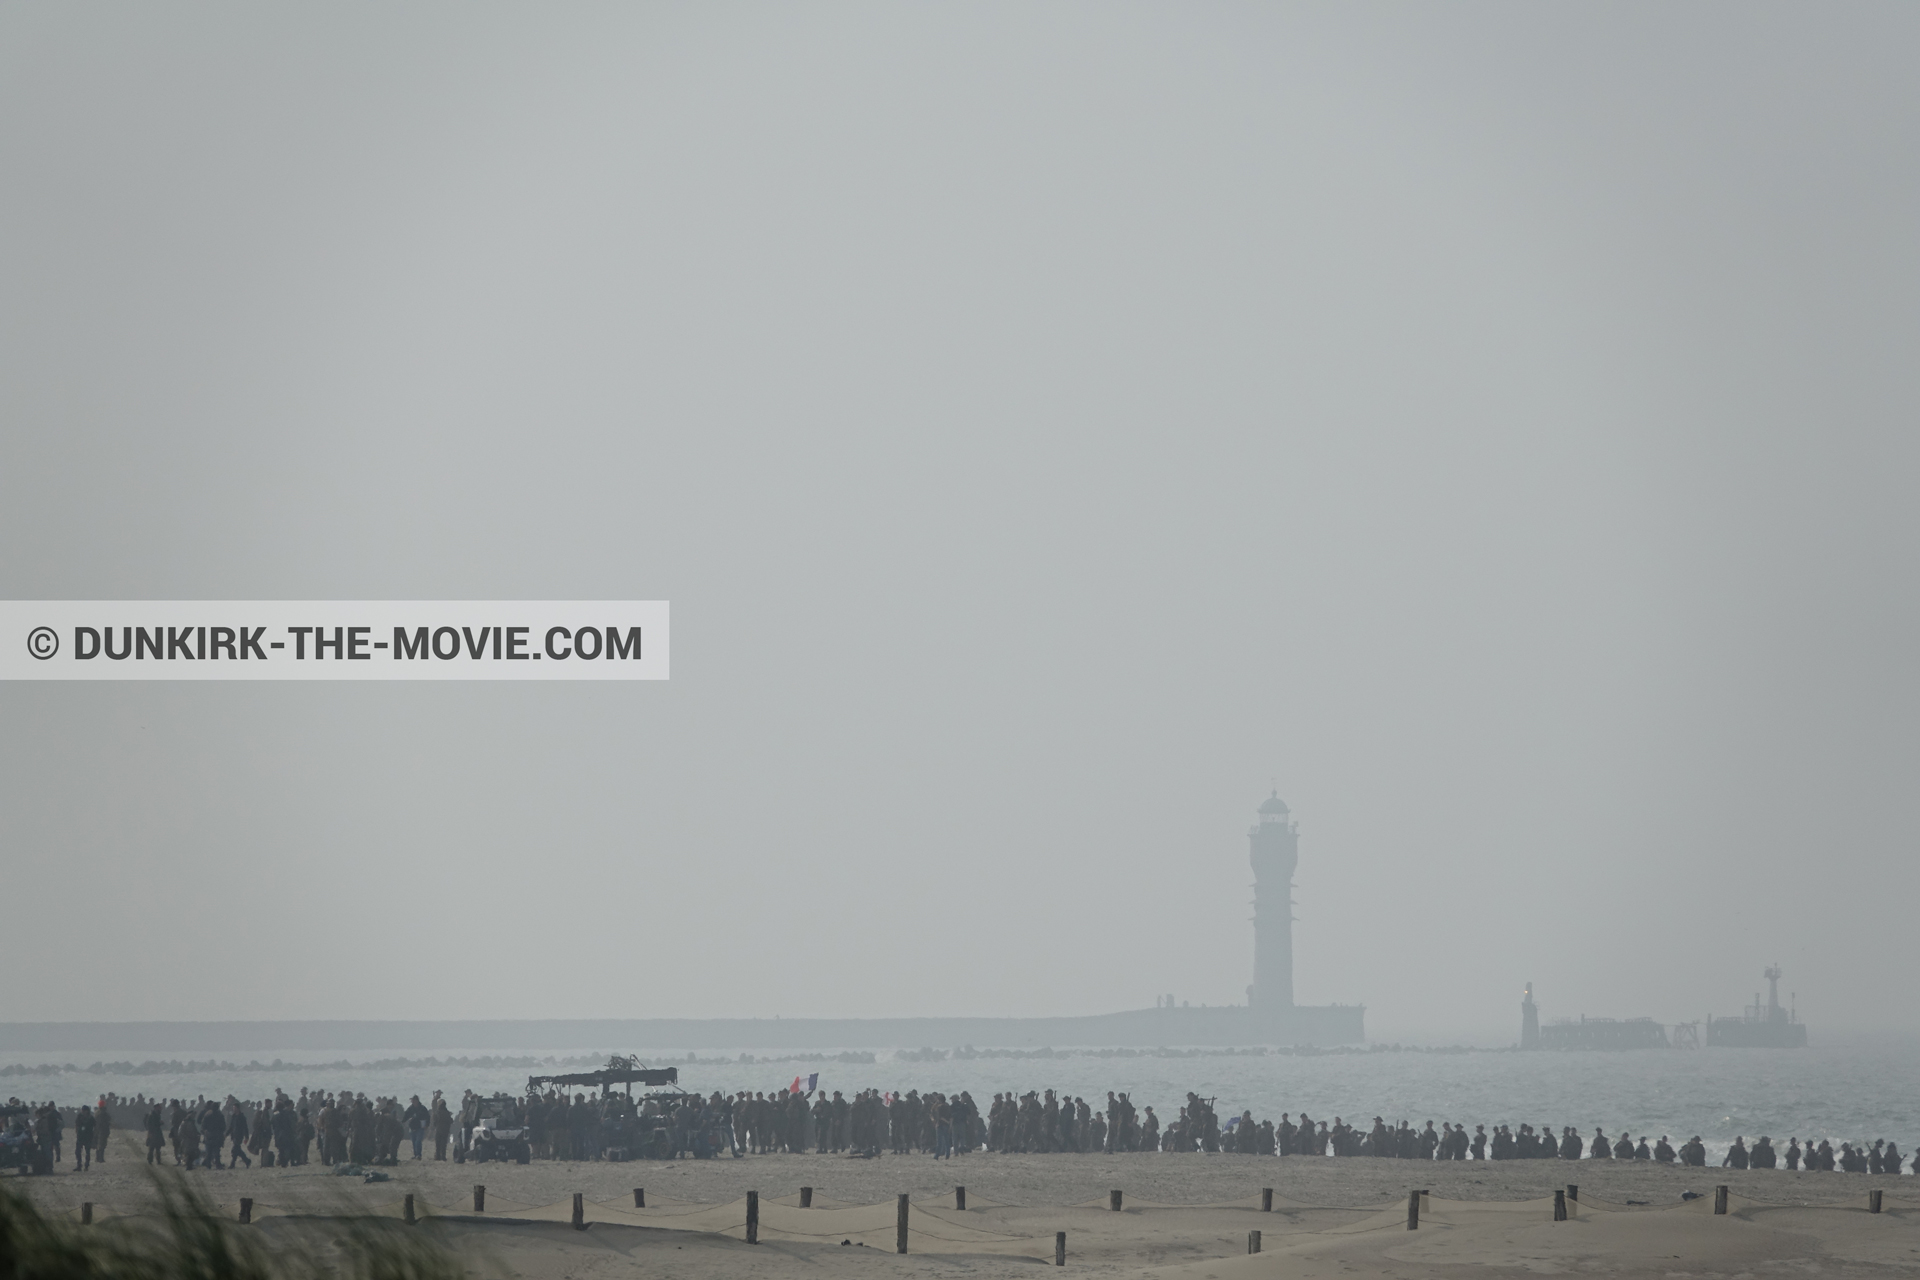 Fotos con extras, faro de Saint-Pol-sur-Mer, playa, equipo técnica,  durante el rodaje de la película Dunkerque de Nolan